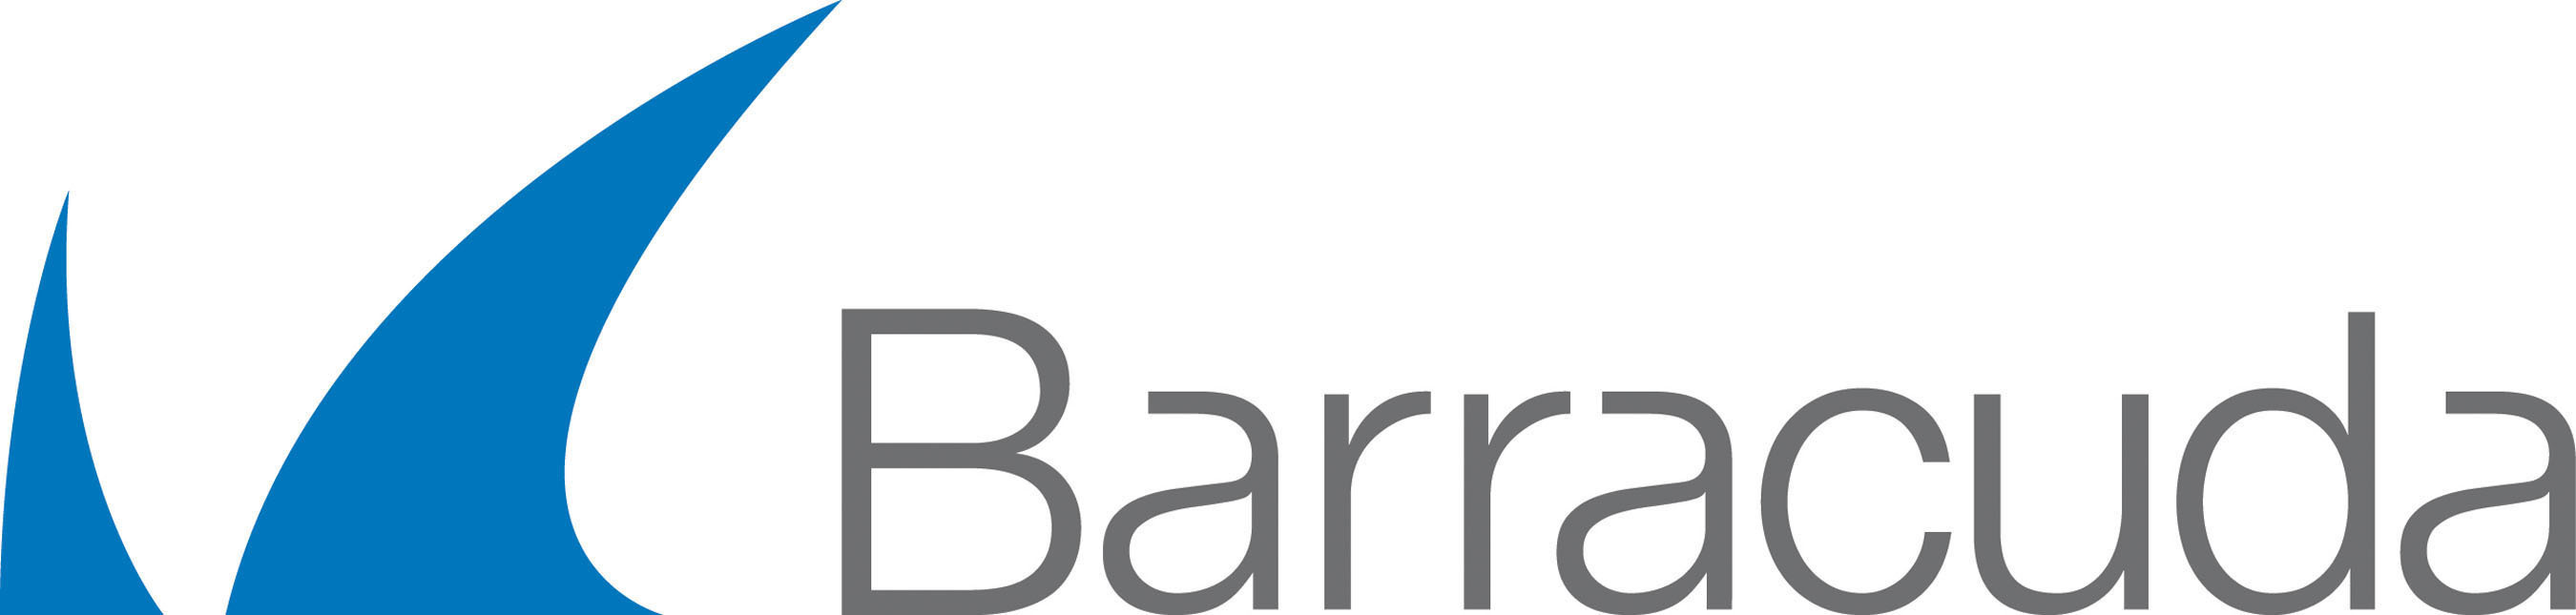 Barracuda Logo. (PRNewsFoto/Barracuda Networks, Inc.) (PRNewsFoto/BARRACUDA NETWORKS, INC.)